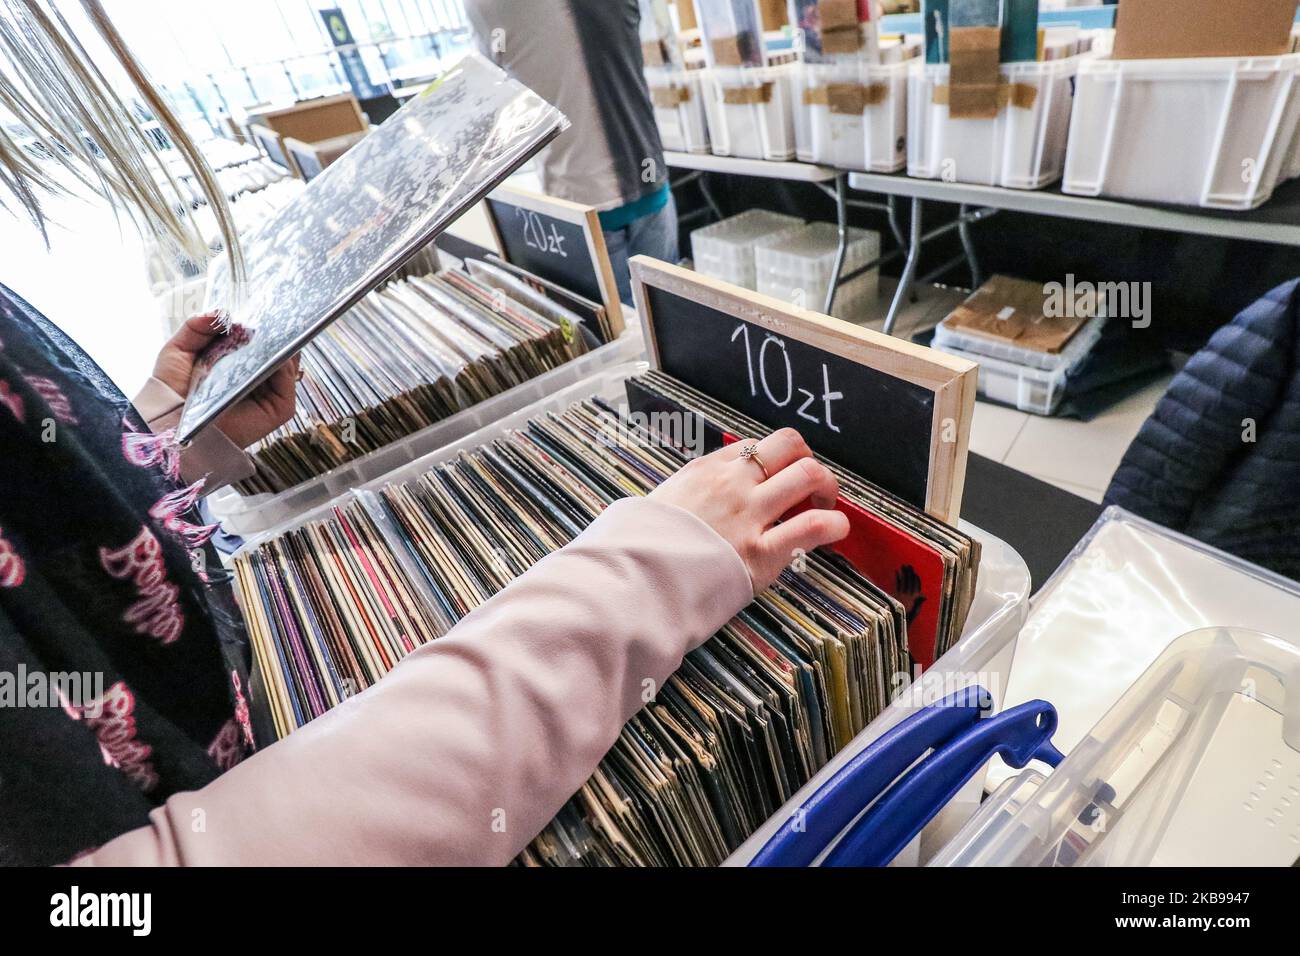 Vinyl-Schallplatten-Fans, die neue Schallplatten kaufen möchten, werden am 26. Oktober 2019 in Danzig, Polen, gesehen. Besucher kaufen, verkaufen und tauschen Tausende von Vinyls während des Vinylmarktes im Einkaufszentrum der Galerie Metropolia in Danzig. (Foto von Michal Fludra/NurPhoto) Stockfoto